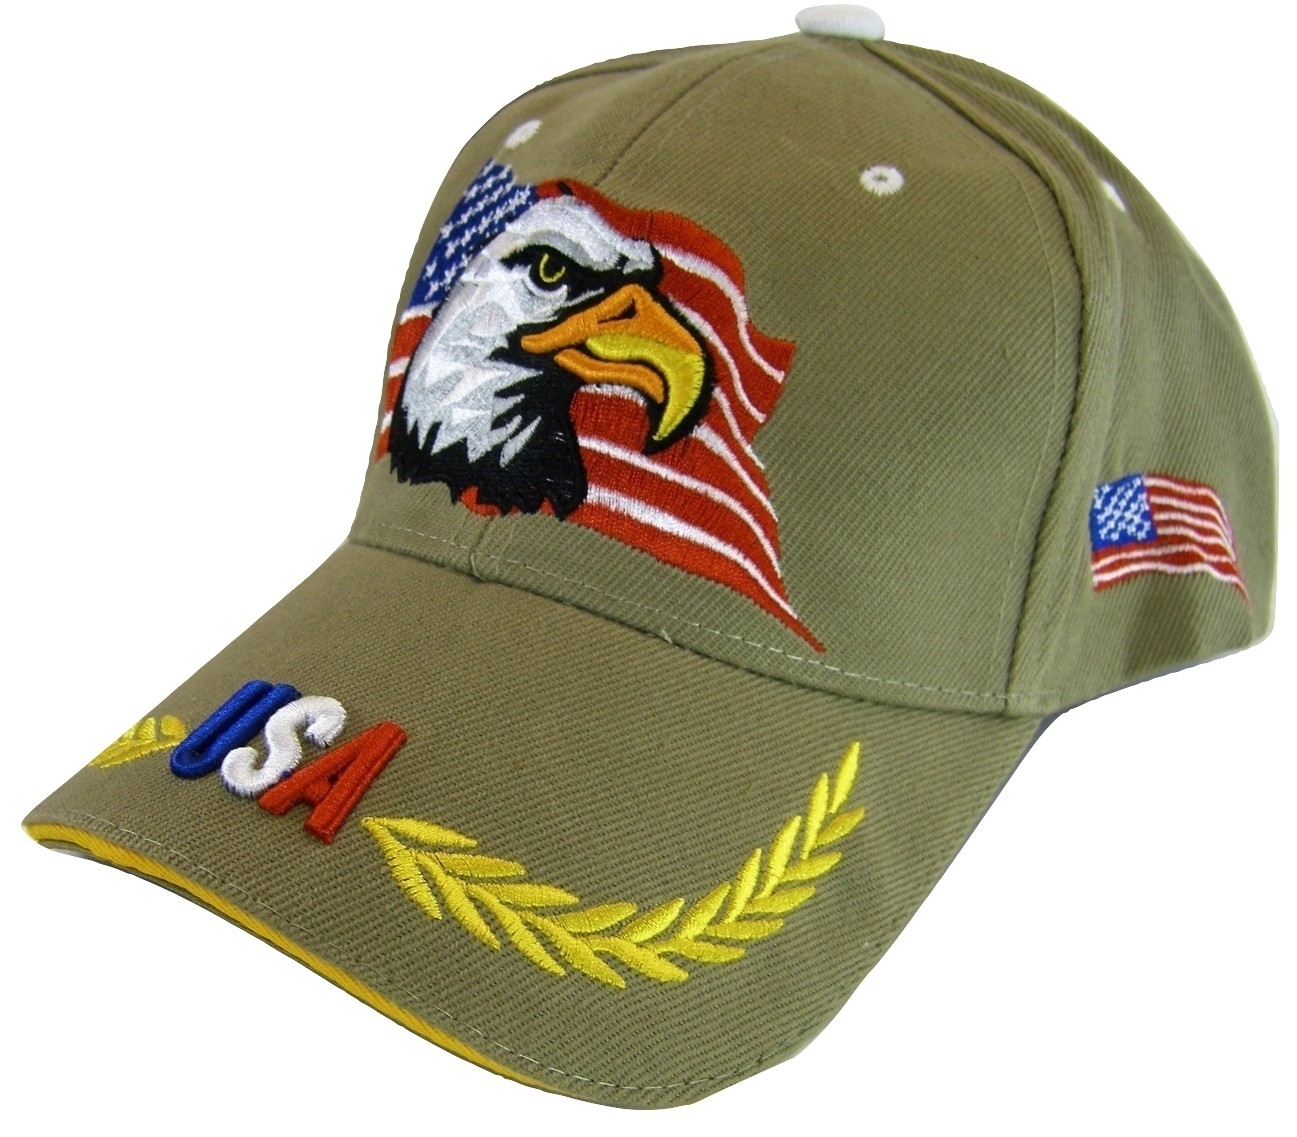 Primary image for USA American Bald Eagle Flag on Side Patriotic Men's Adjustable Baseball Cap KH